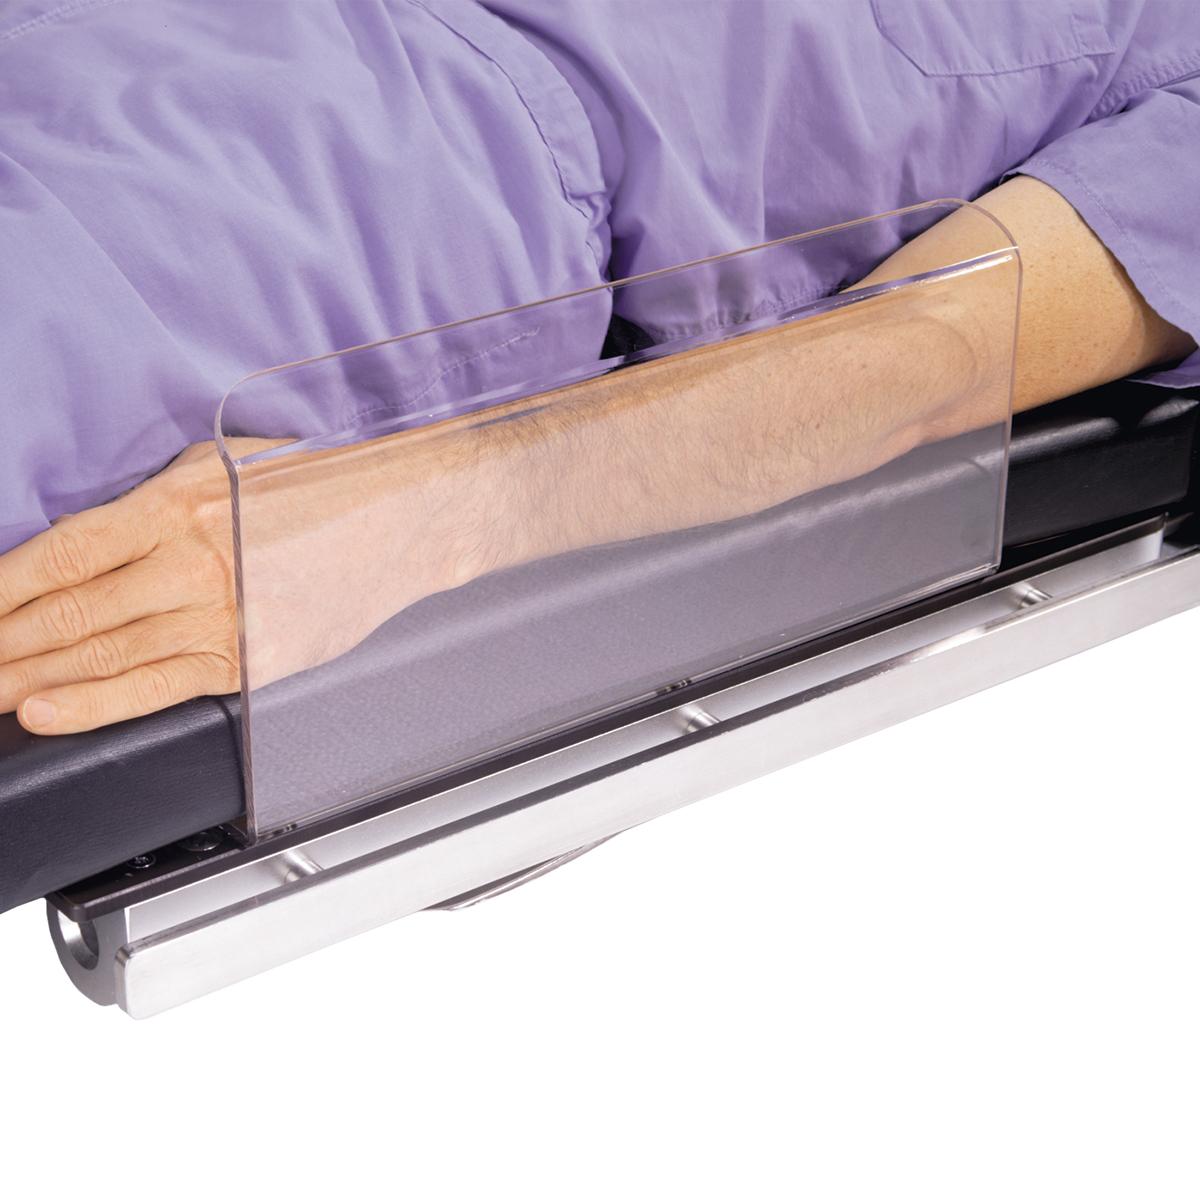 Proteção do braço, em uso com paciente